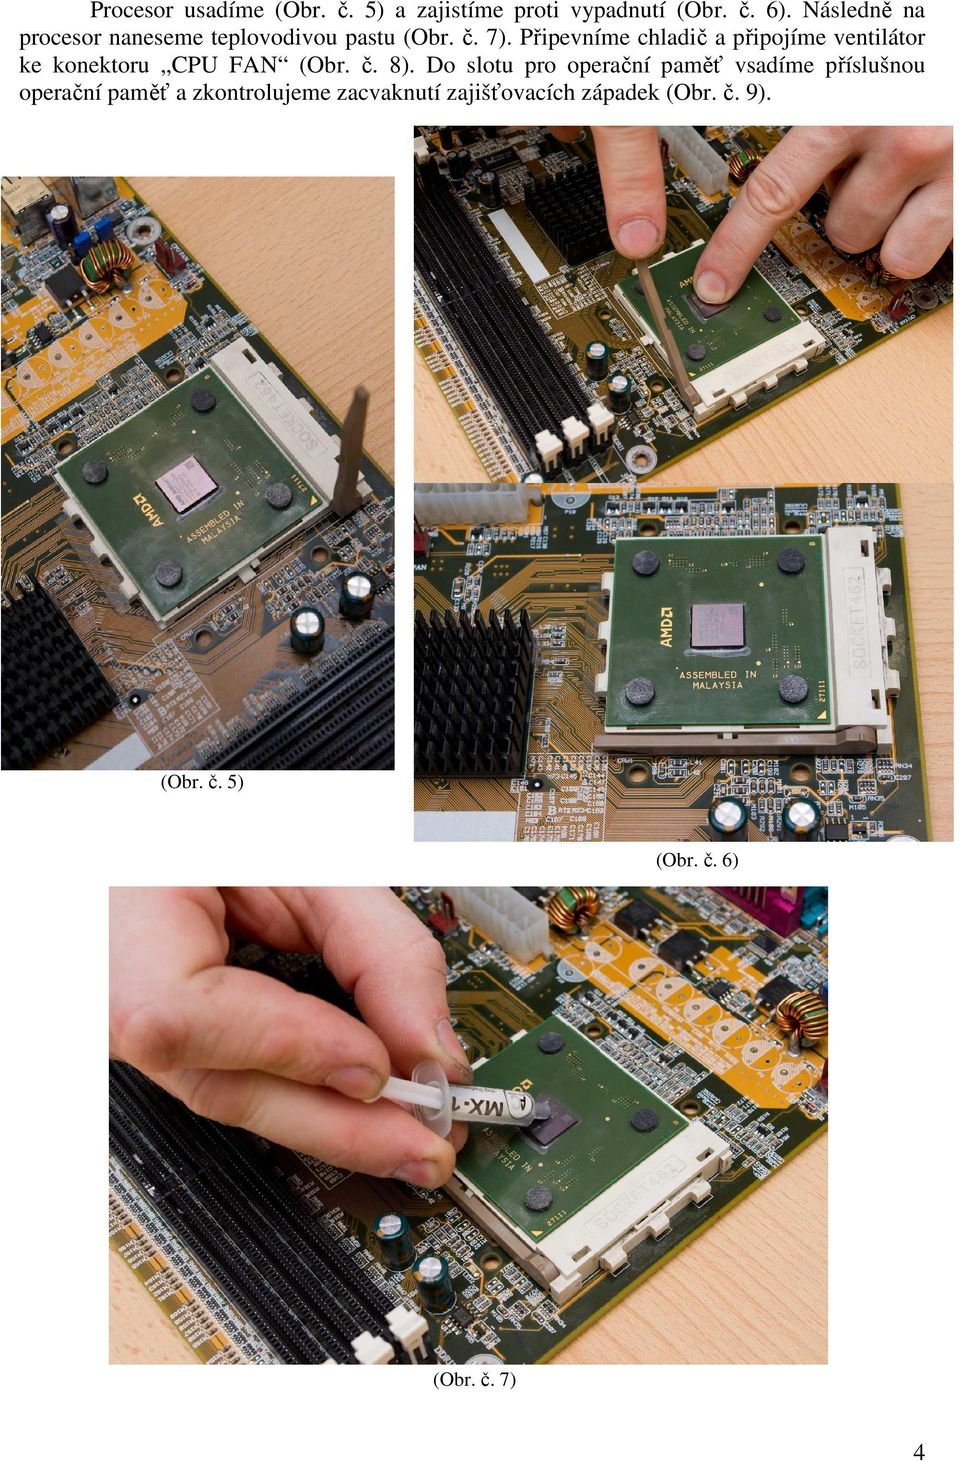 Připevníme chladič a připojíme ventilátor ke konektoru CPU FAN (Obr. č. 8).